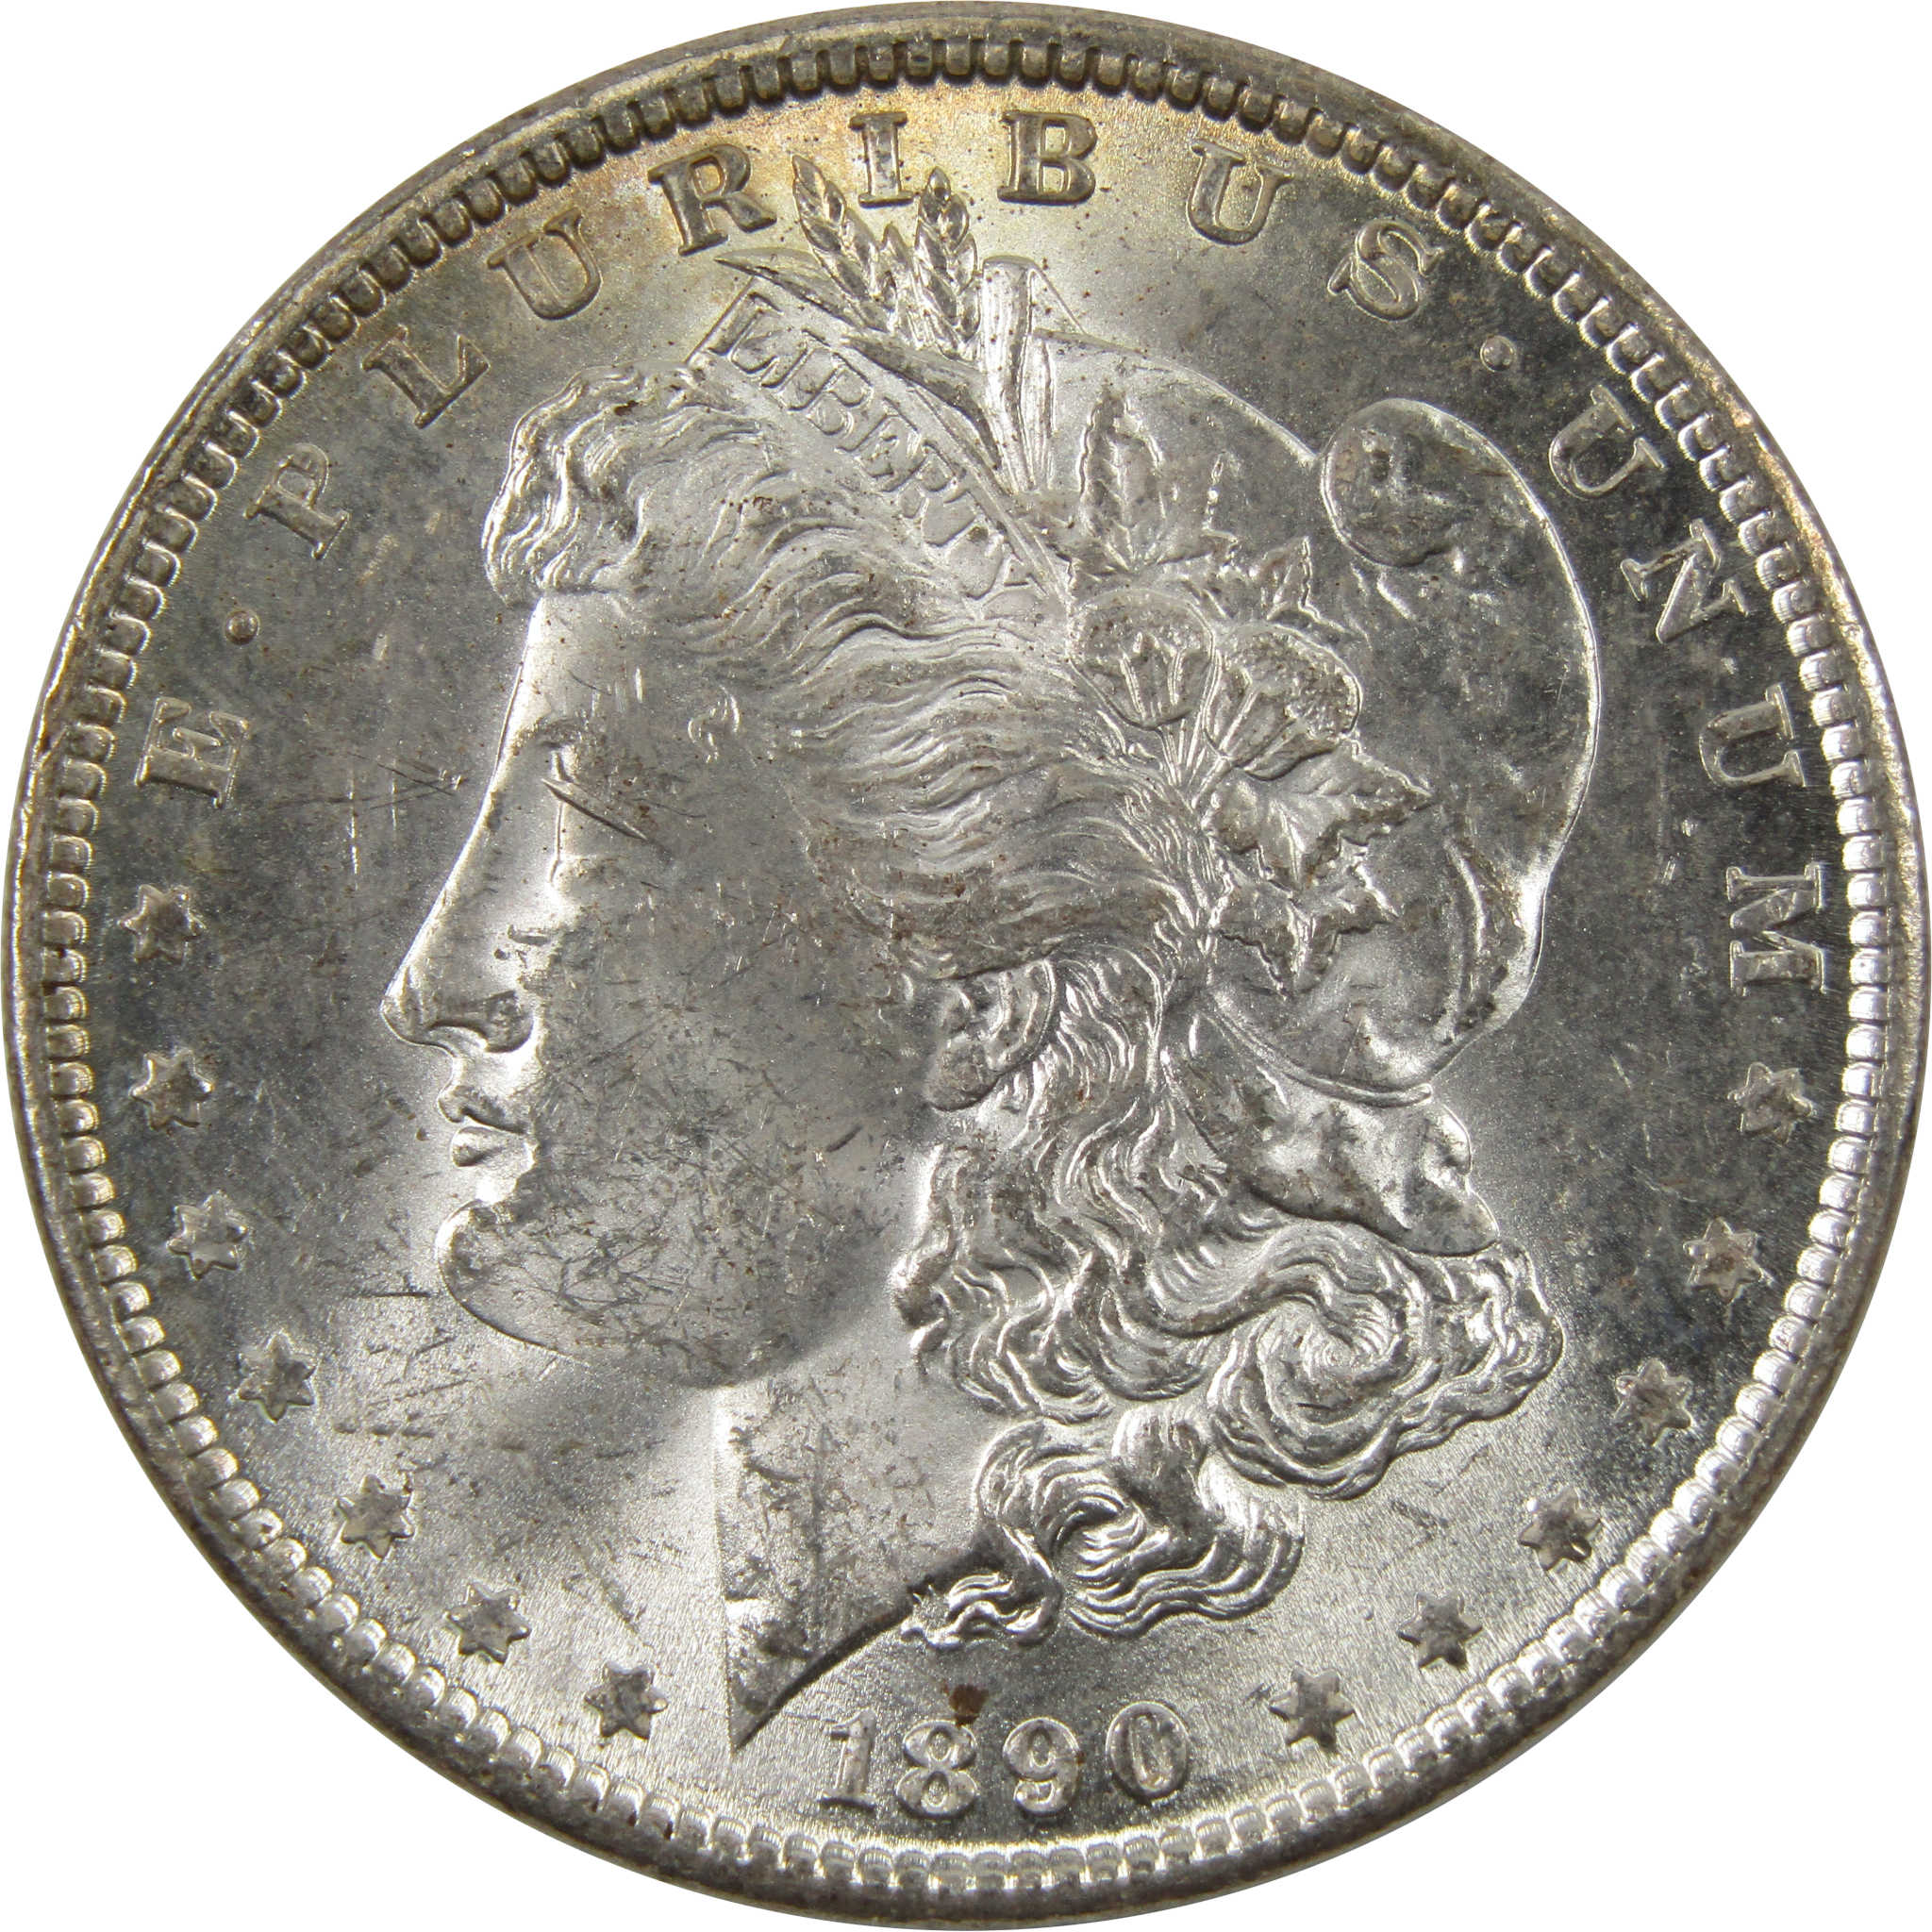 1890 Morgan Dollar BU Uncirculated 90% Silver $1 Coin SKU:I9876 - Morgan coin - Morgan silver dollar - Morgan silver dollar for sale - Profile Coins &amp; Collectibles